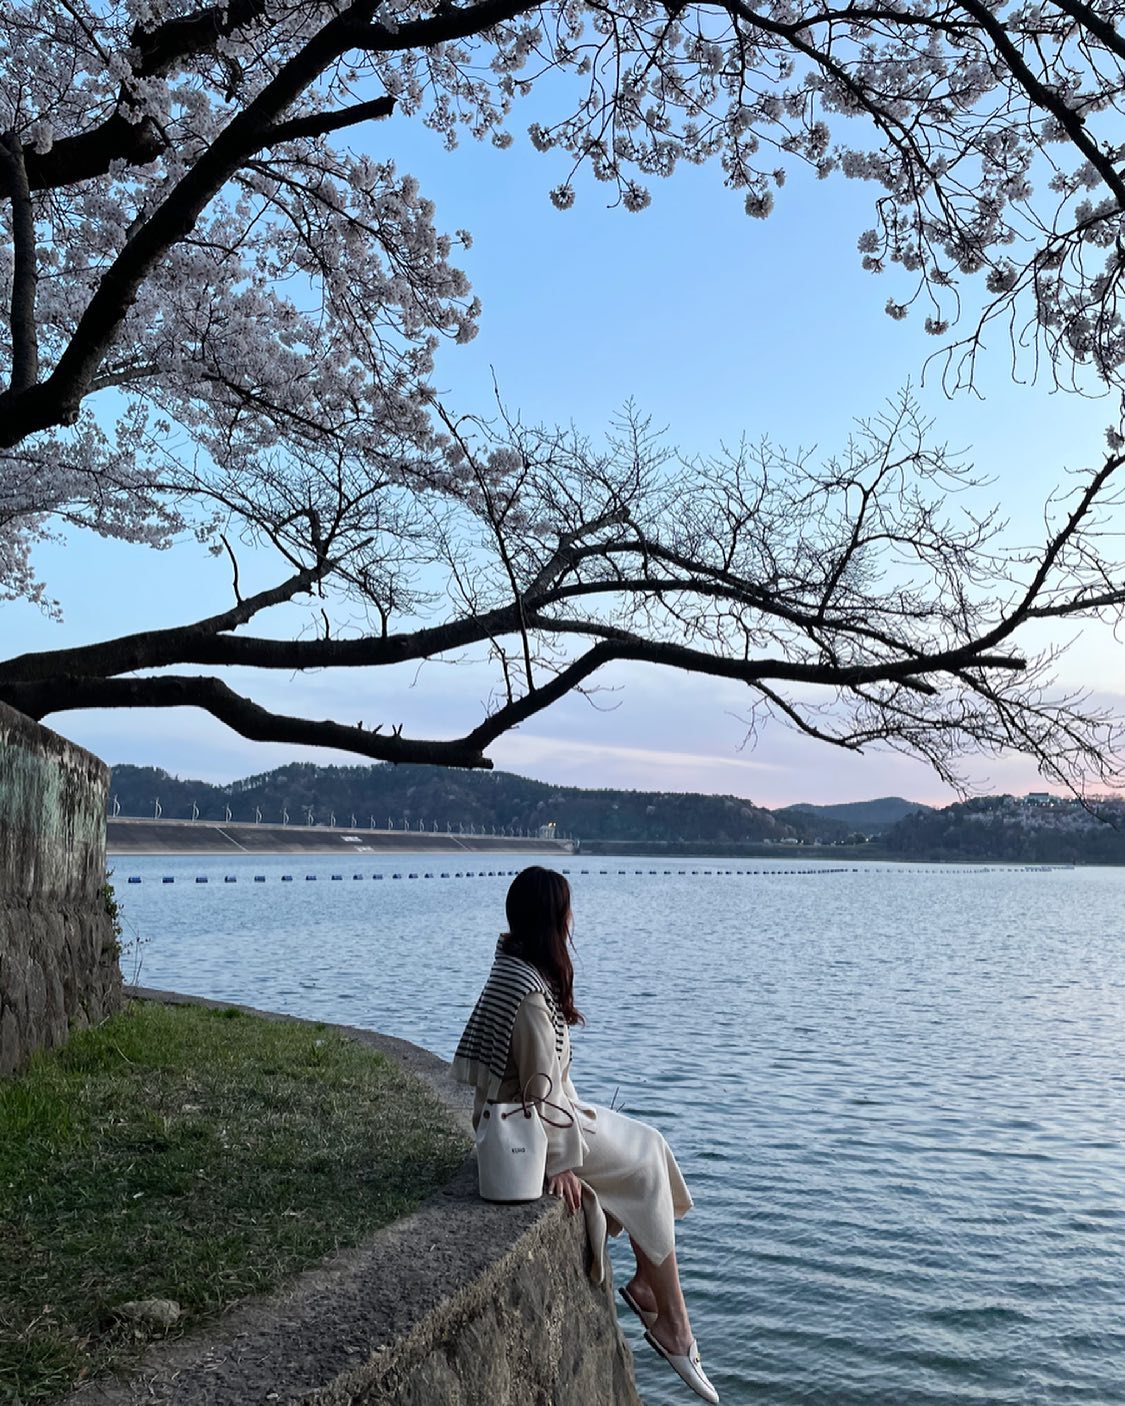 호수변에 앉아 벚꽃 사진을 찍으려는 사람들이 많이 찾아온다. 